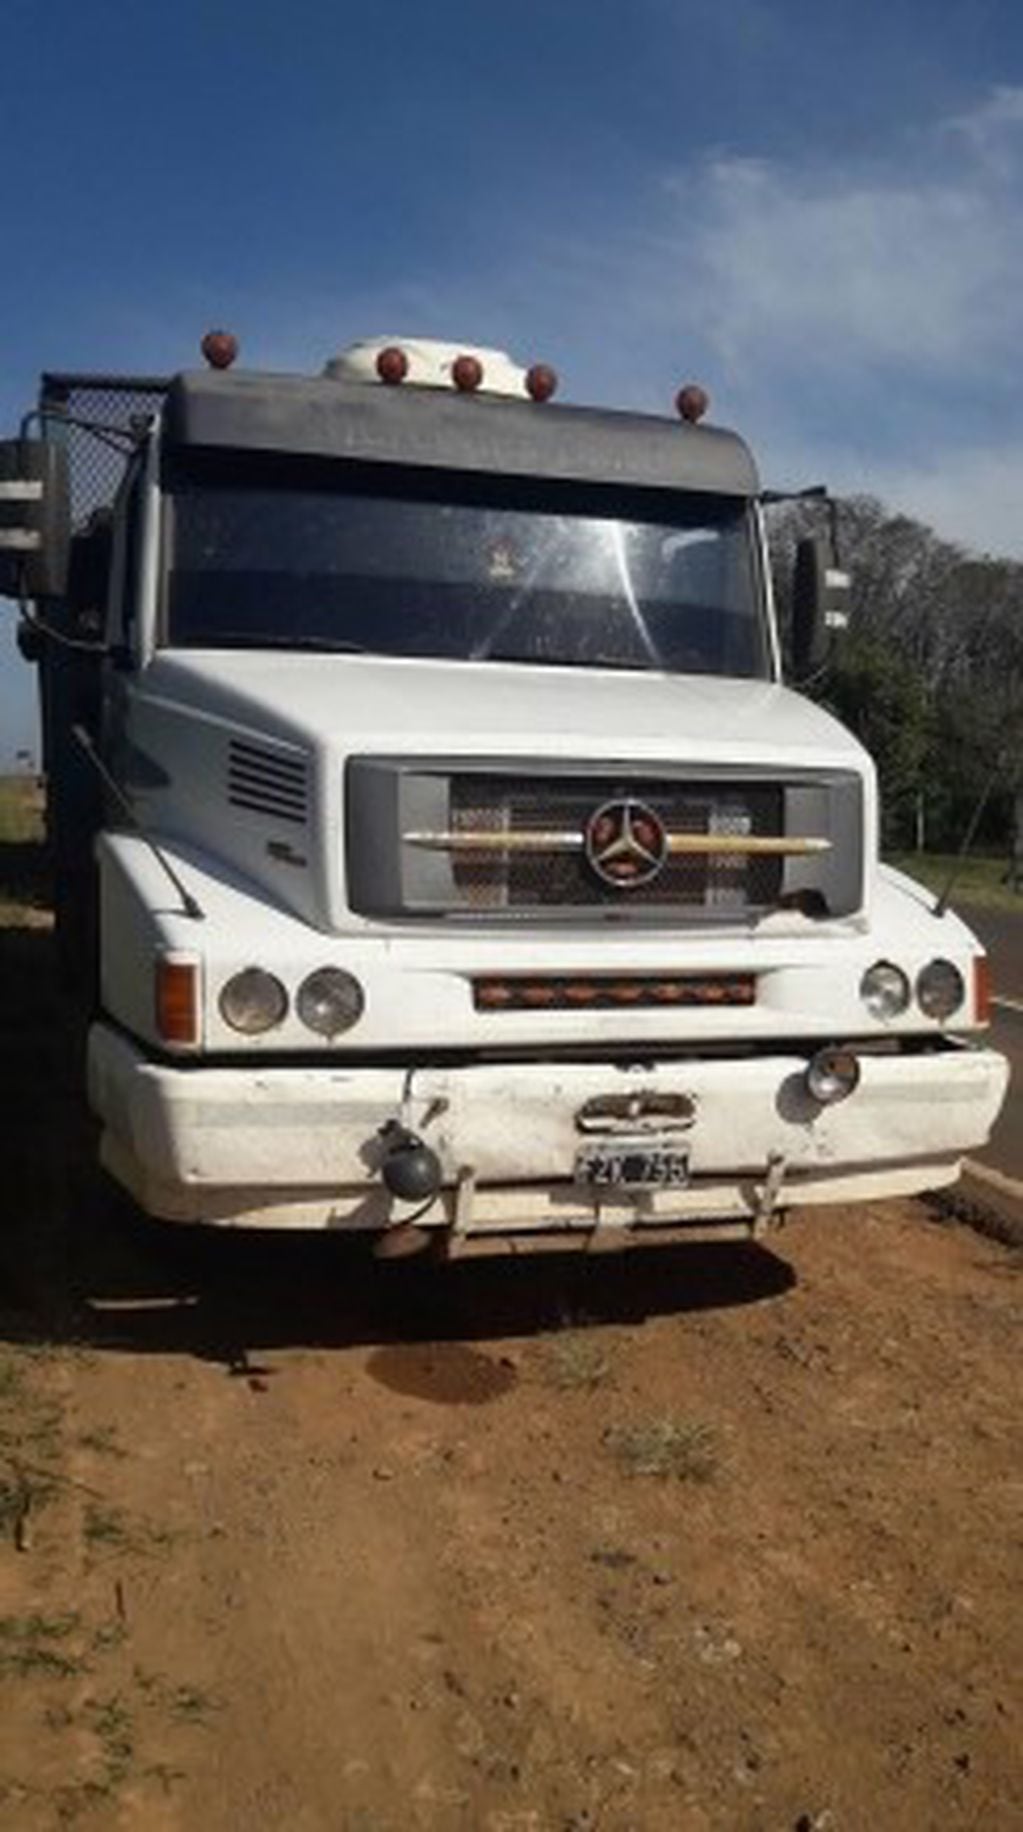 El camión que Cabral intentó pasar se vio involucrado en el accidente pero, el conductor salió ileso. Fuente: Misiones Cuatro.